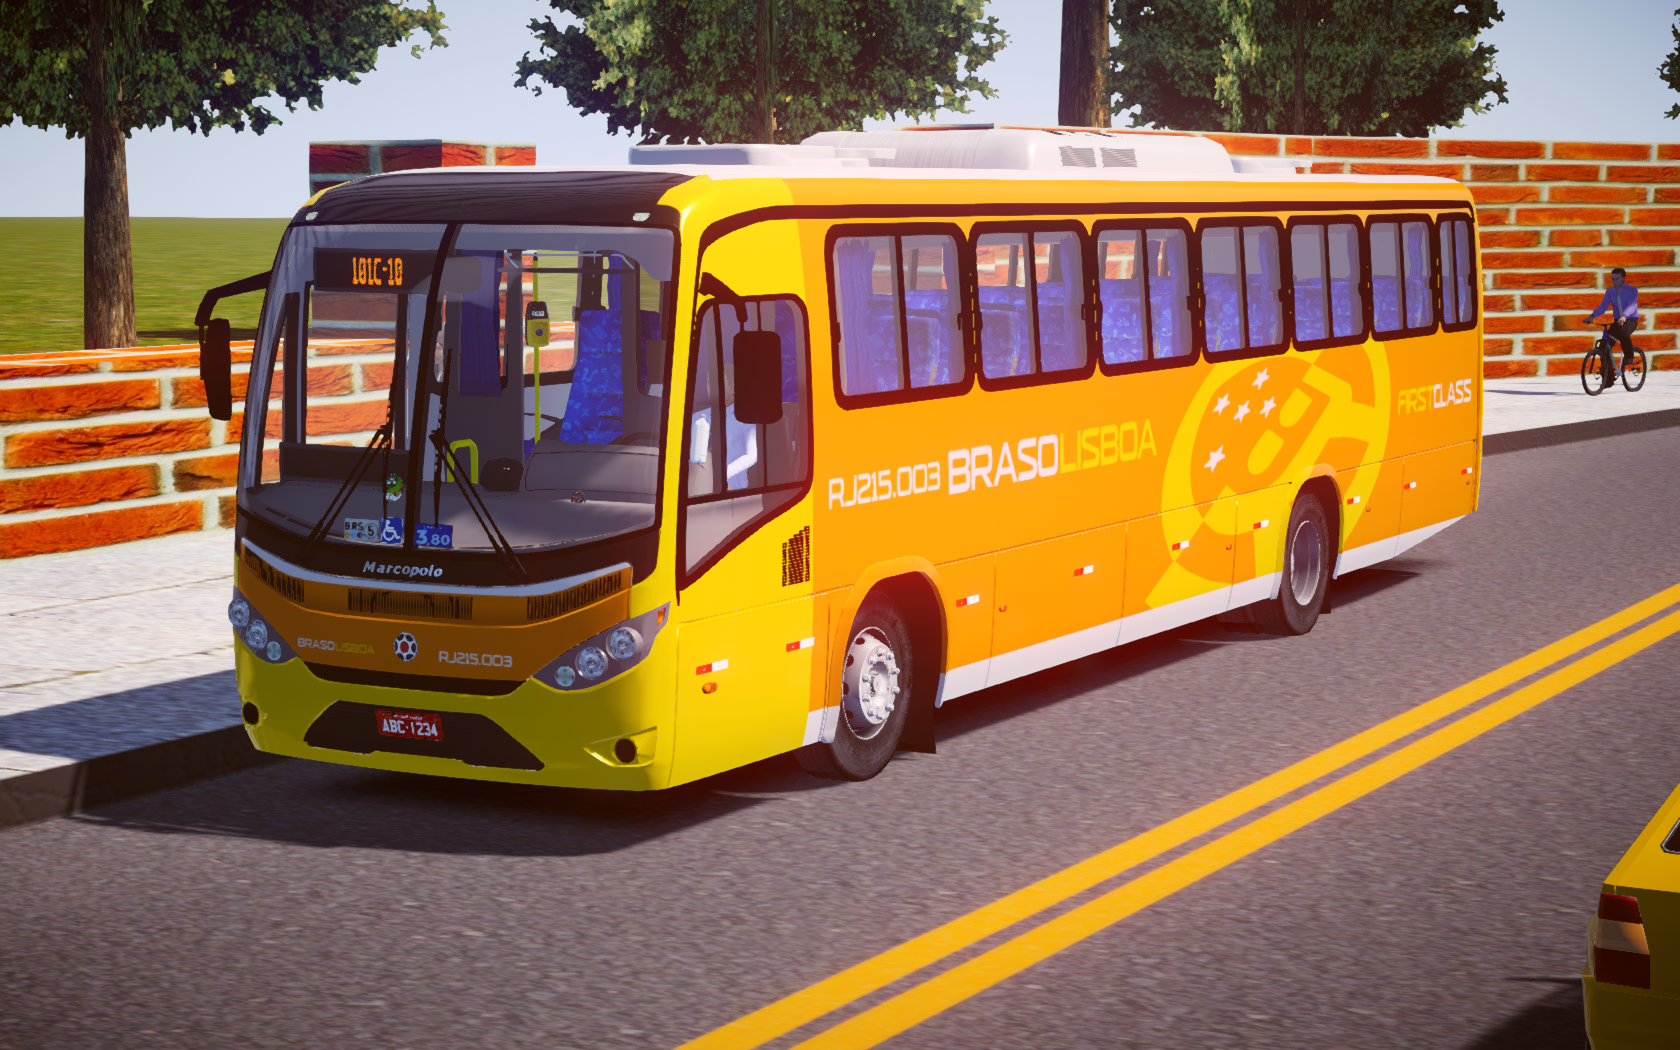 bus simulator 2019 for pc